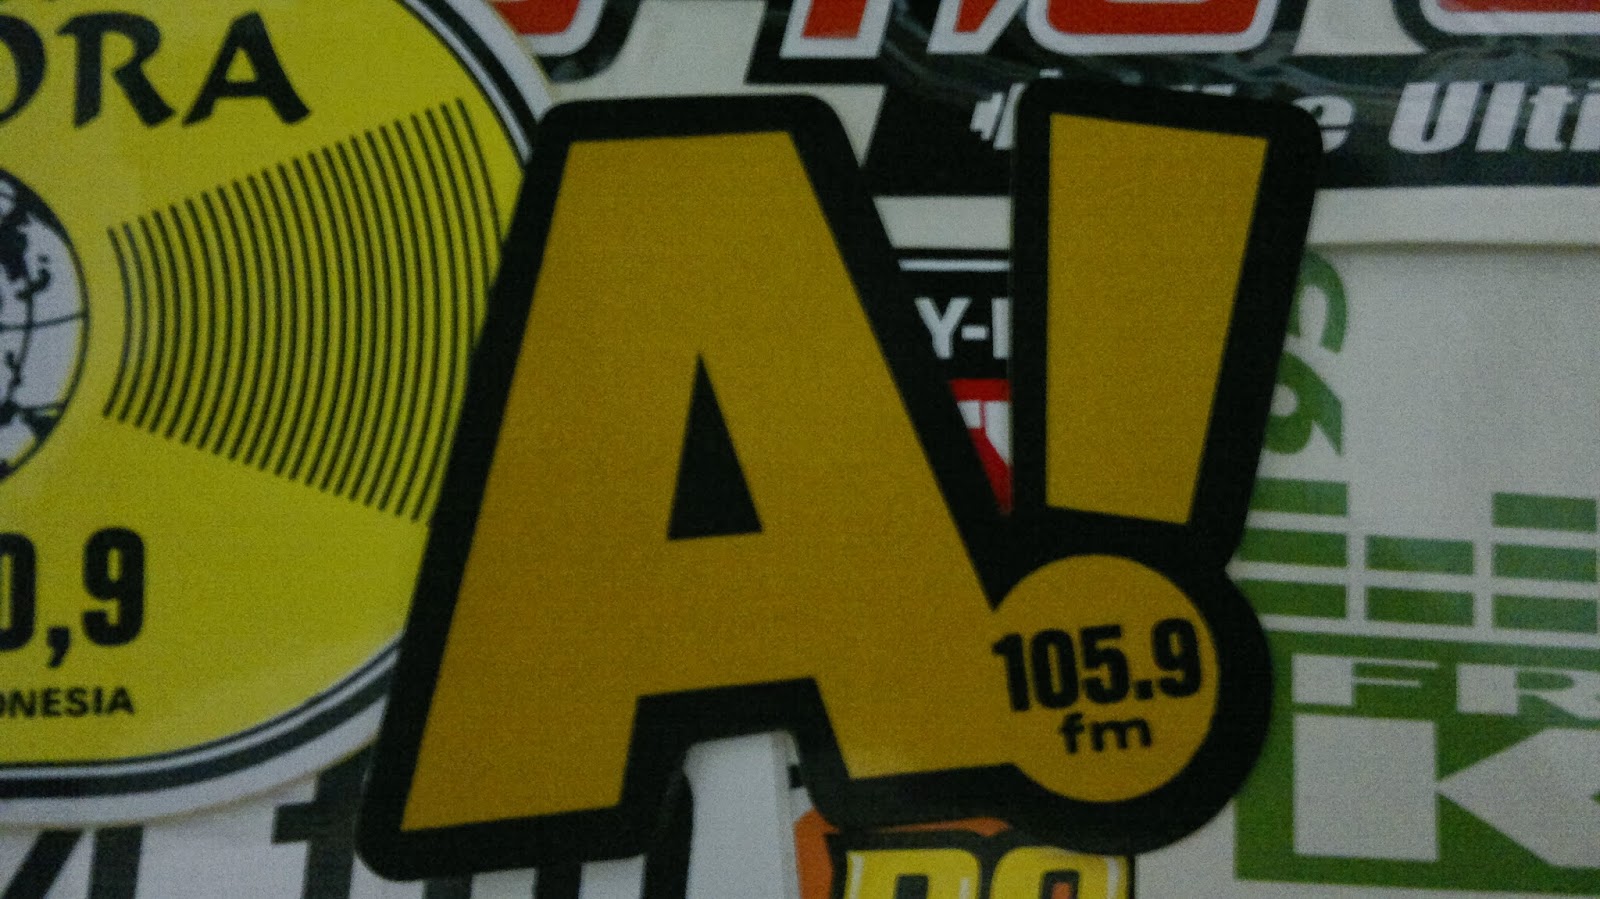 Radio Branding Materials: Sticker  Ardan Radio Bandung 2013, akhir 1990an, awal 1990an